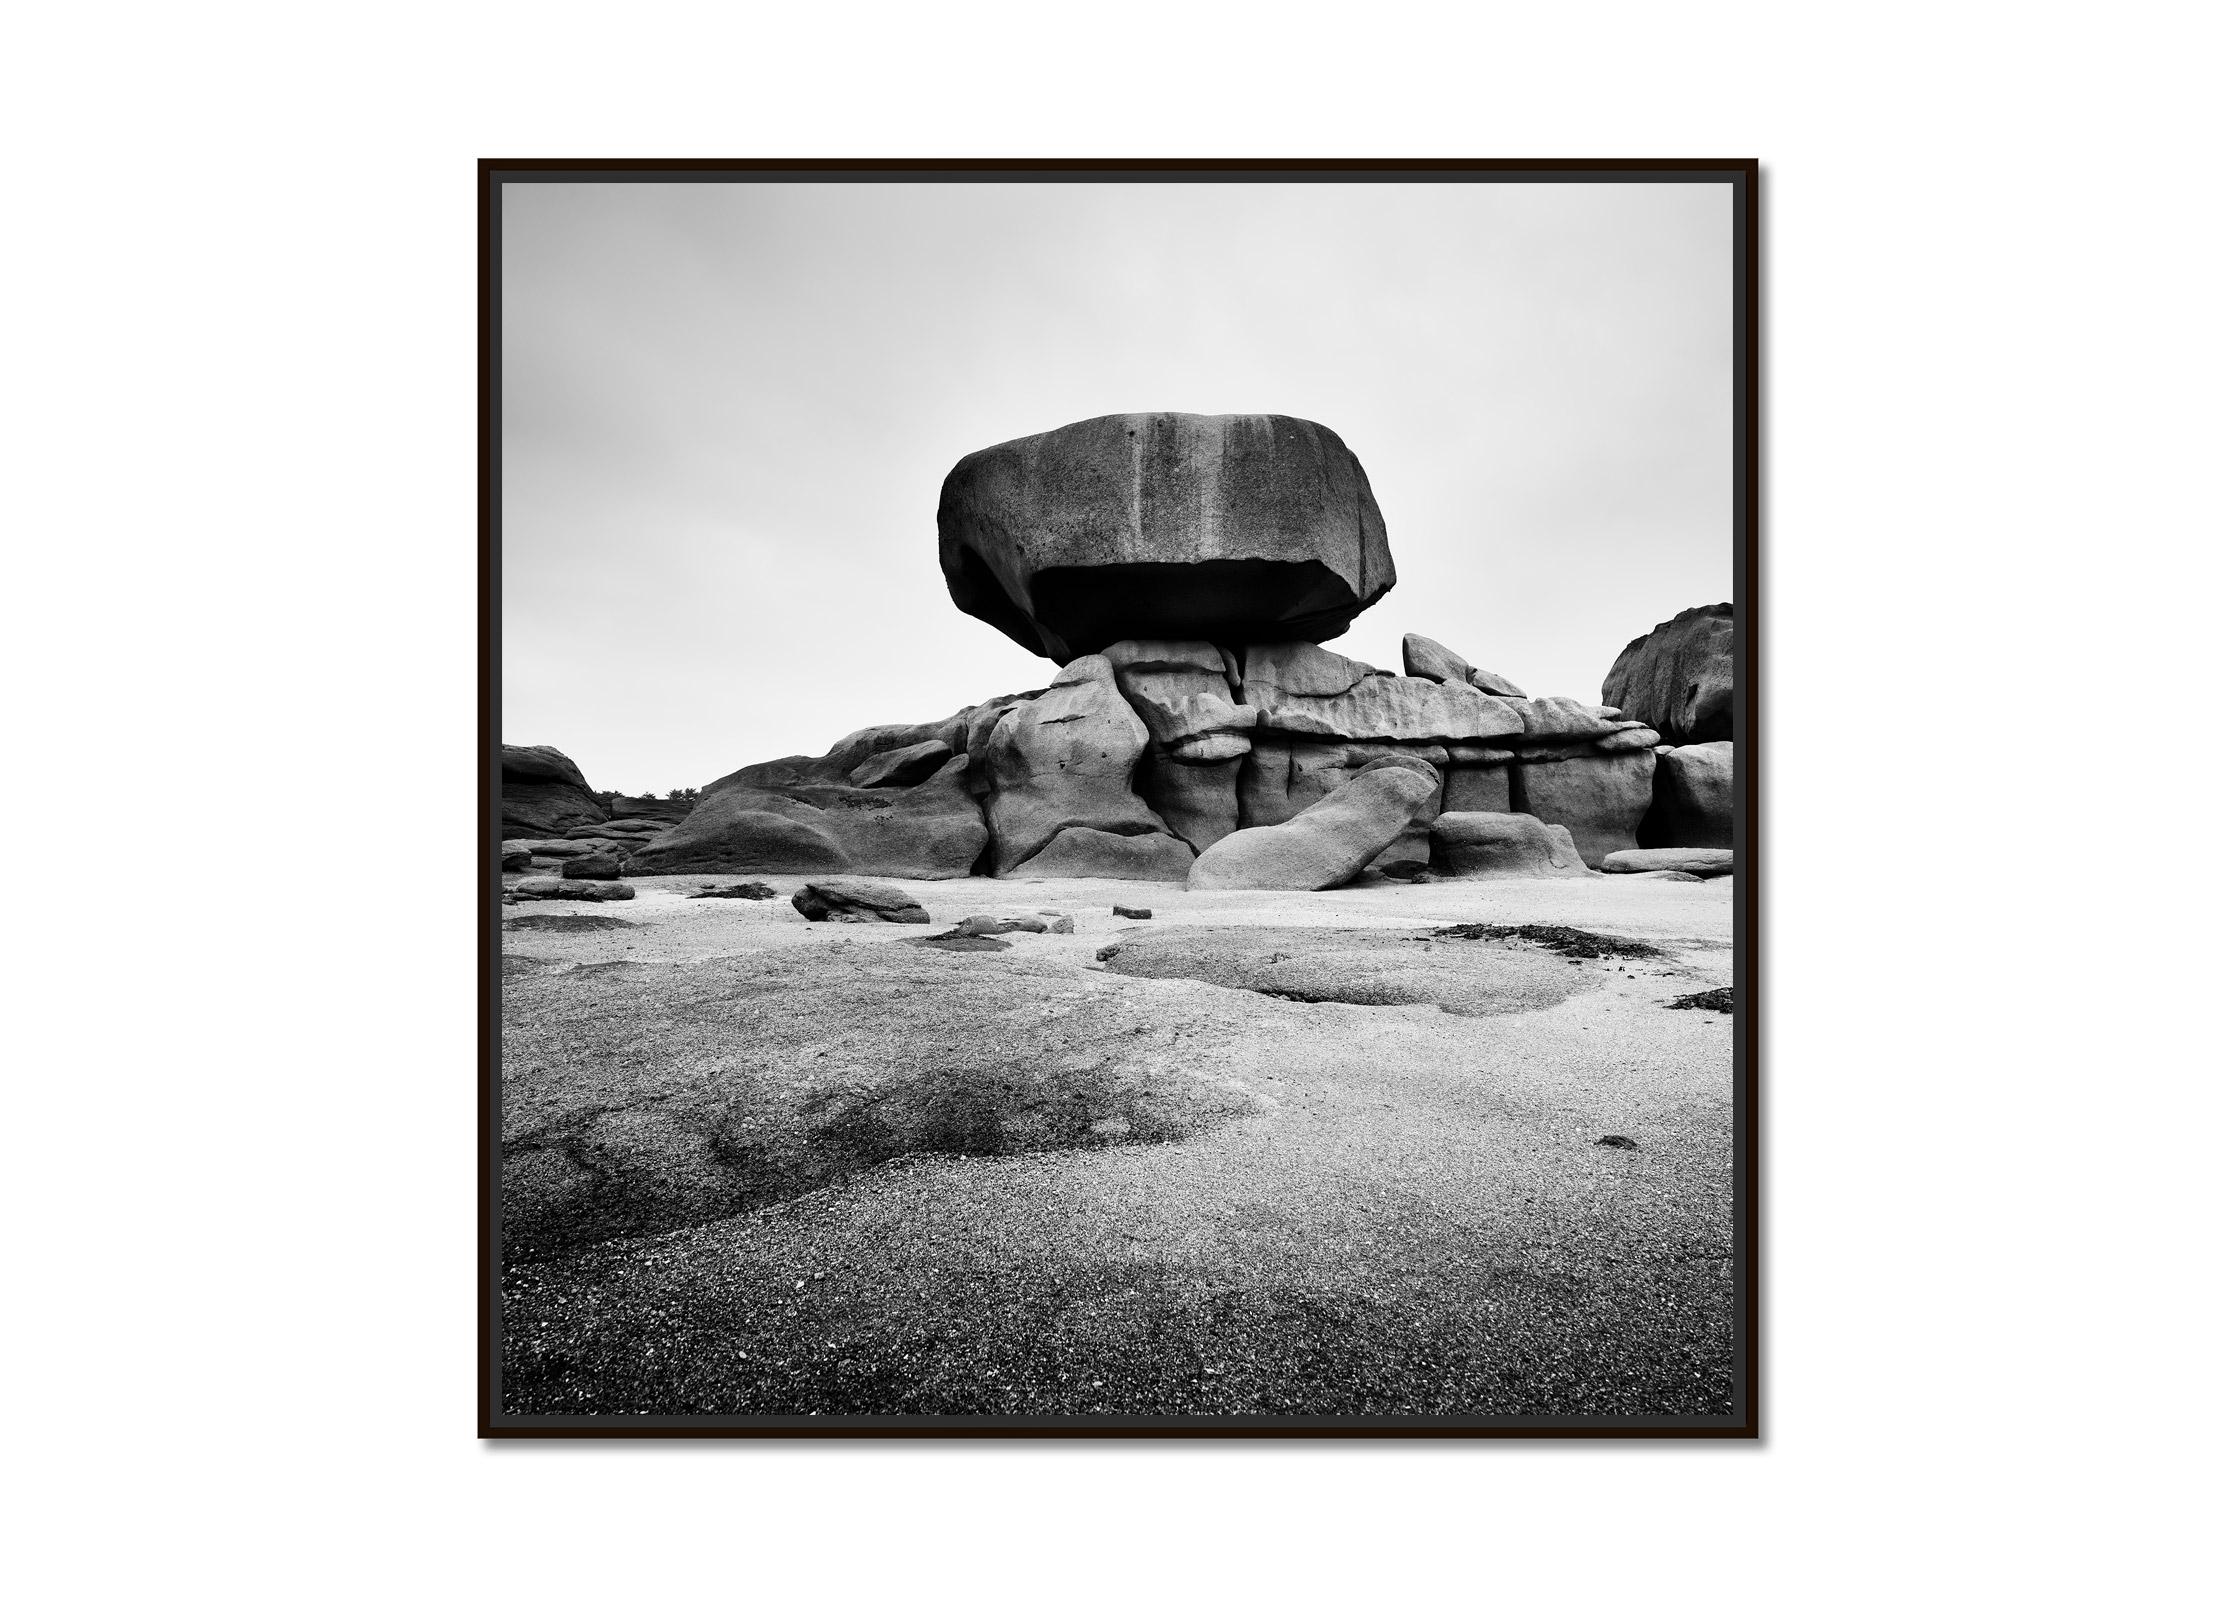 Côte de granit rose, énorme rocher, photographie noir et blanc, paysage fine art - Photograph de Gerald Berghammer